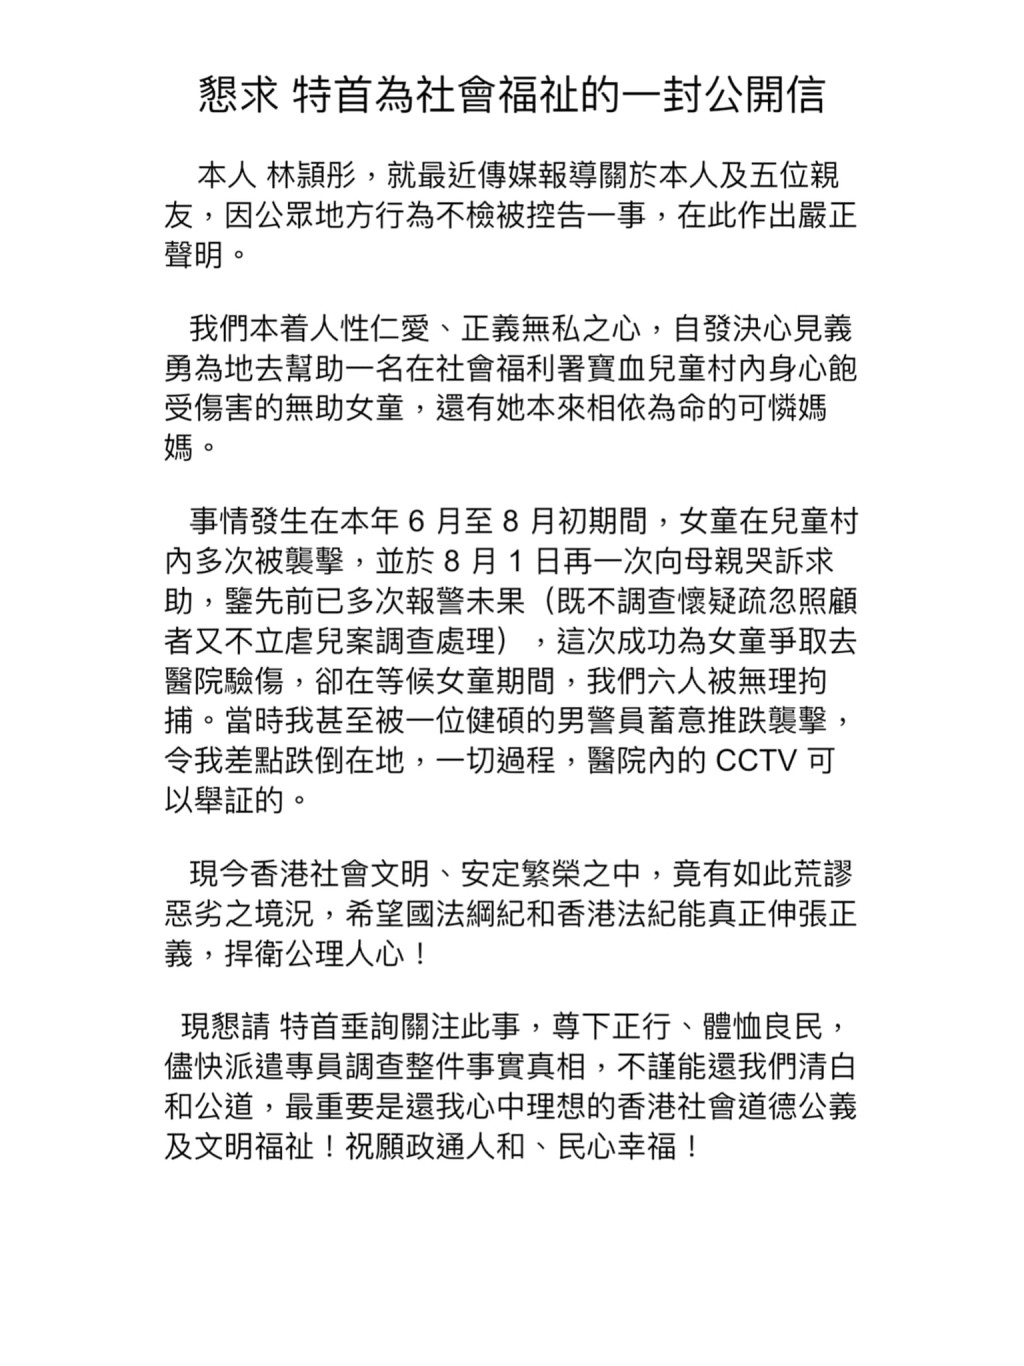 林颖彤又发公开信提及医院事件。